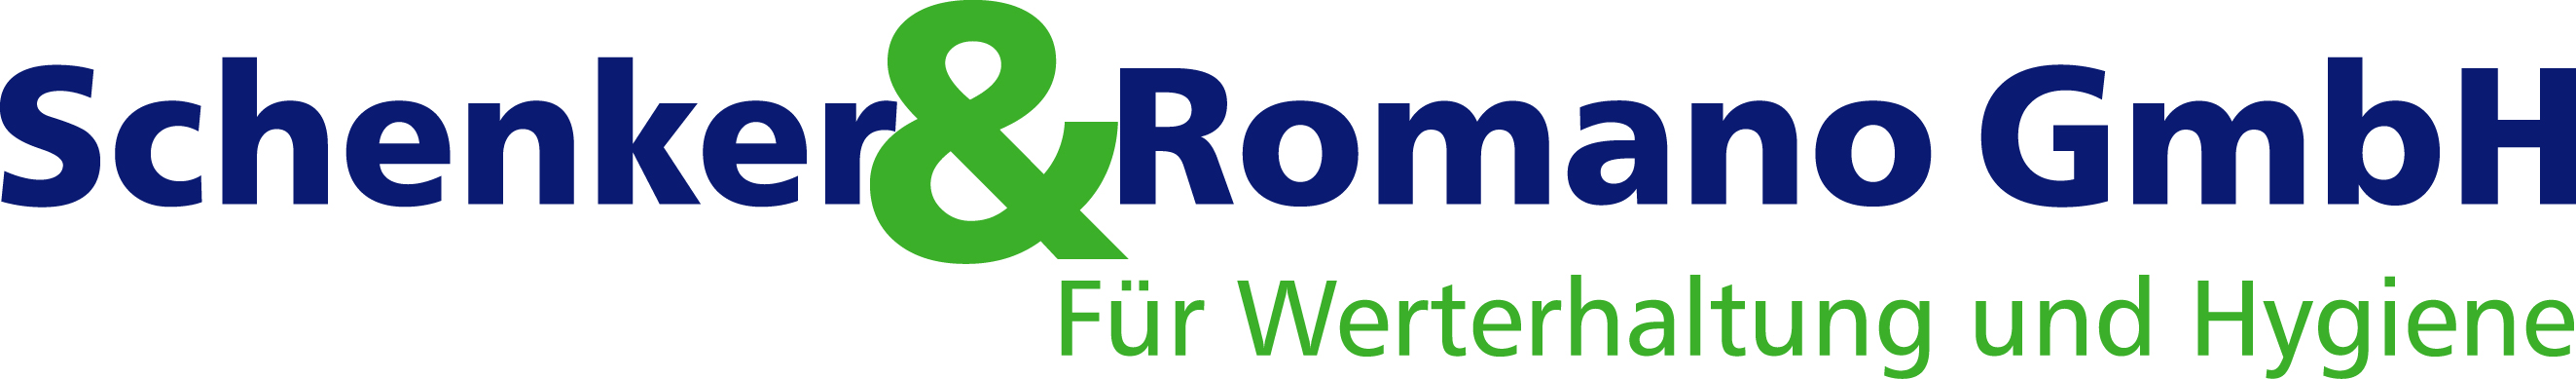 Logo Schenker & Romano